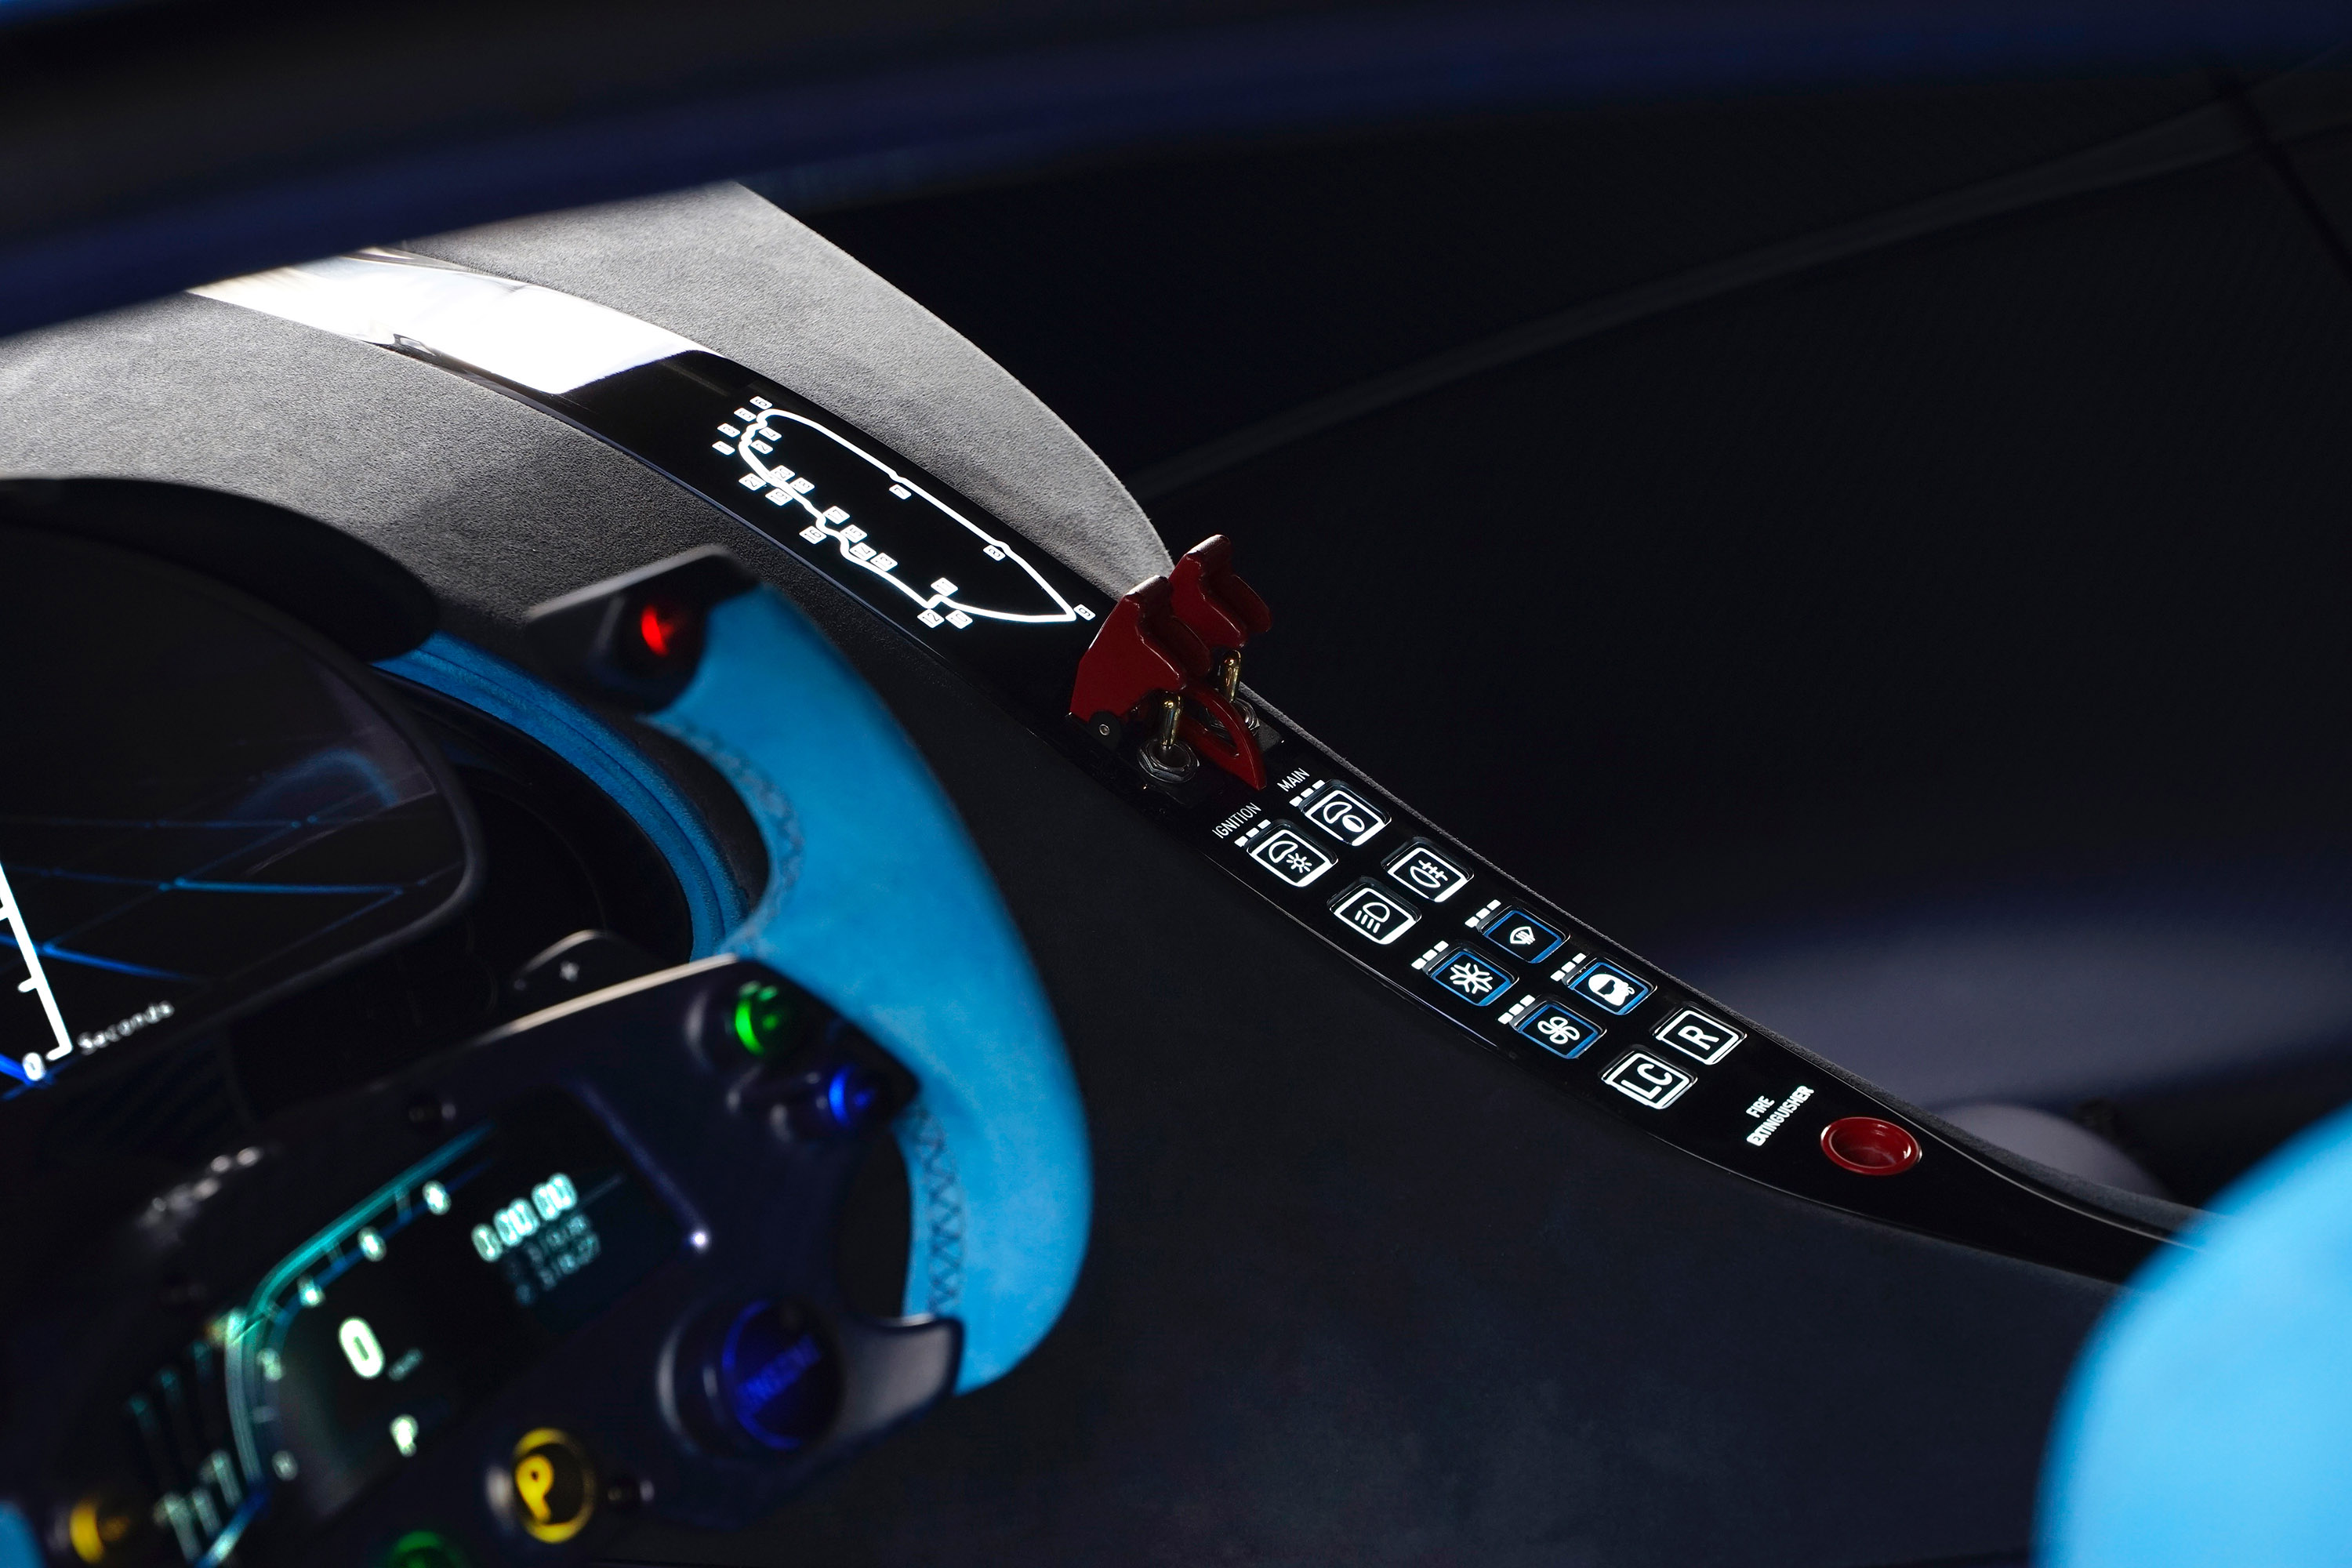 Bugatti Vision Gran Turismo Concept